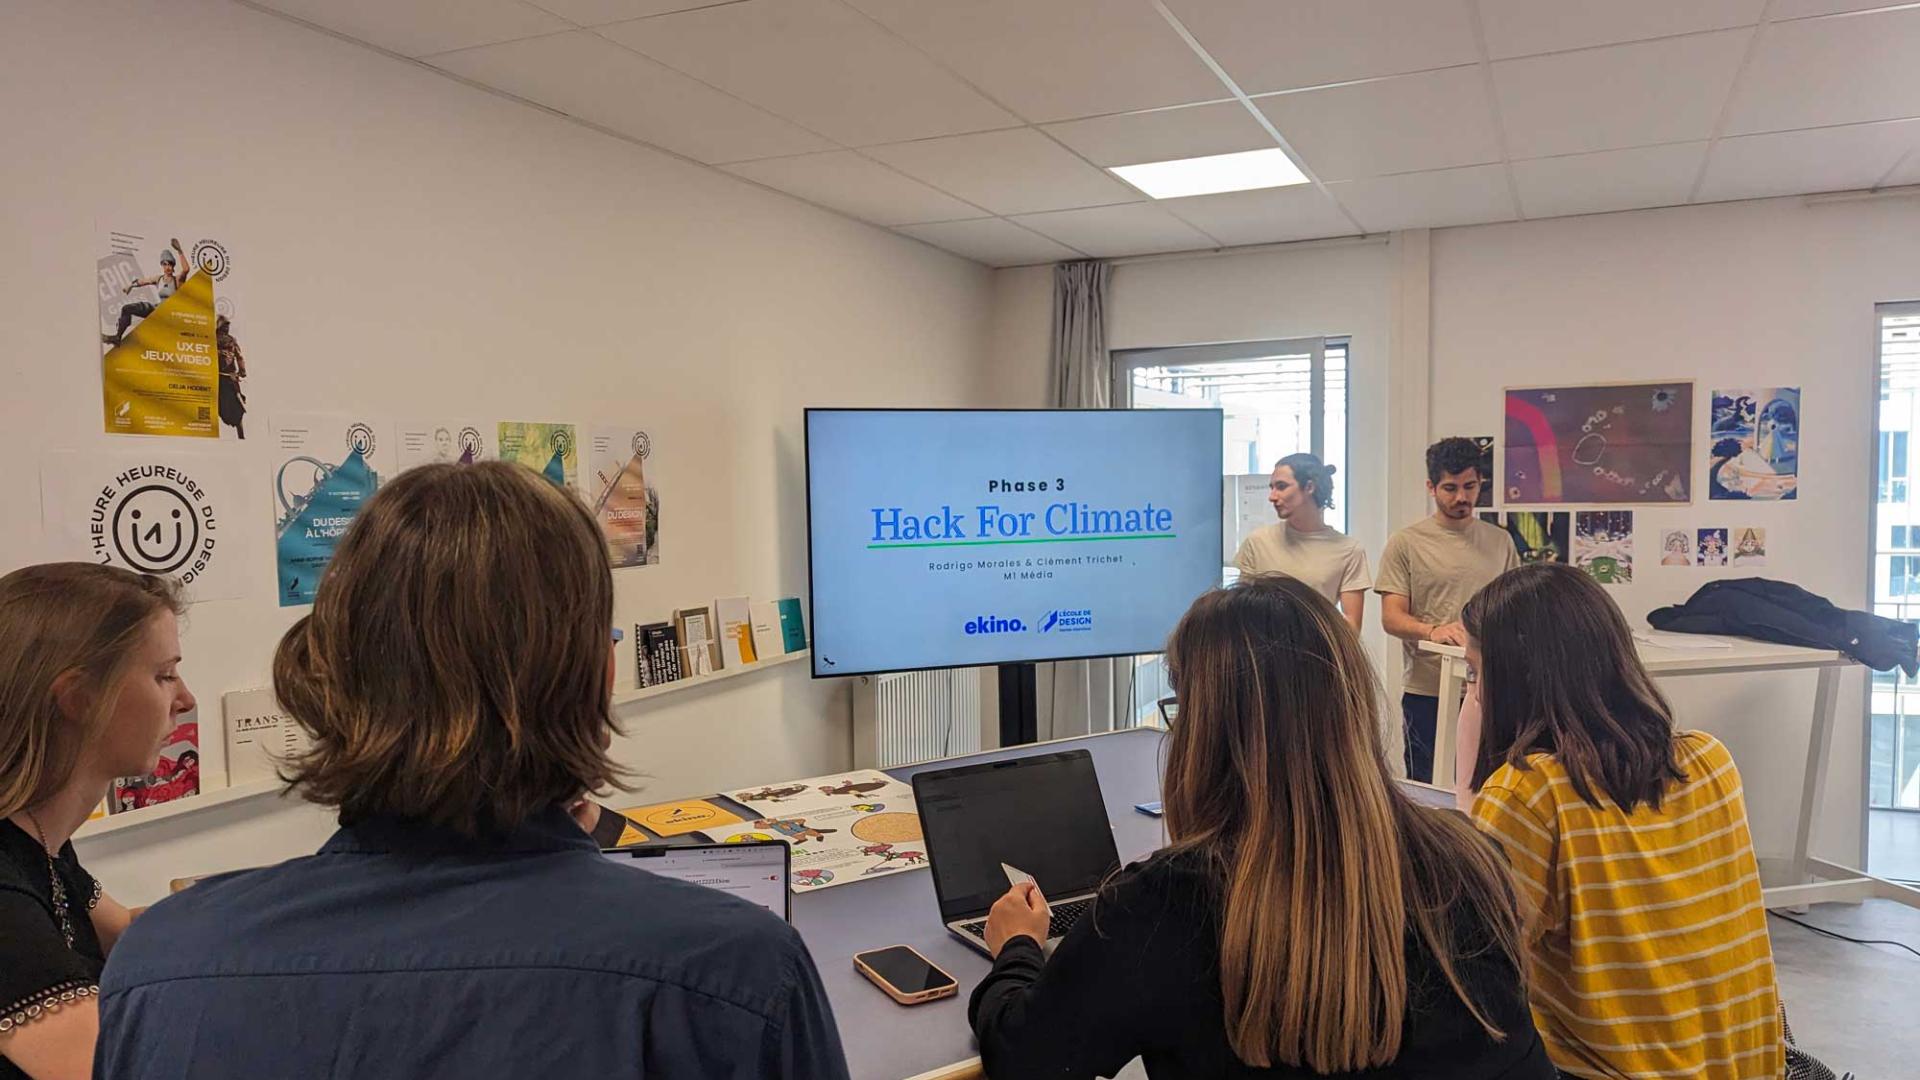 groupe de travail lors du hackathon dédié au climat